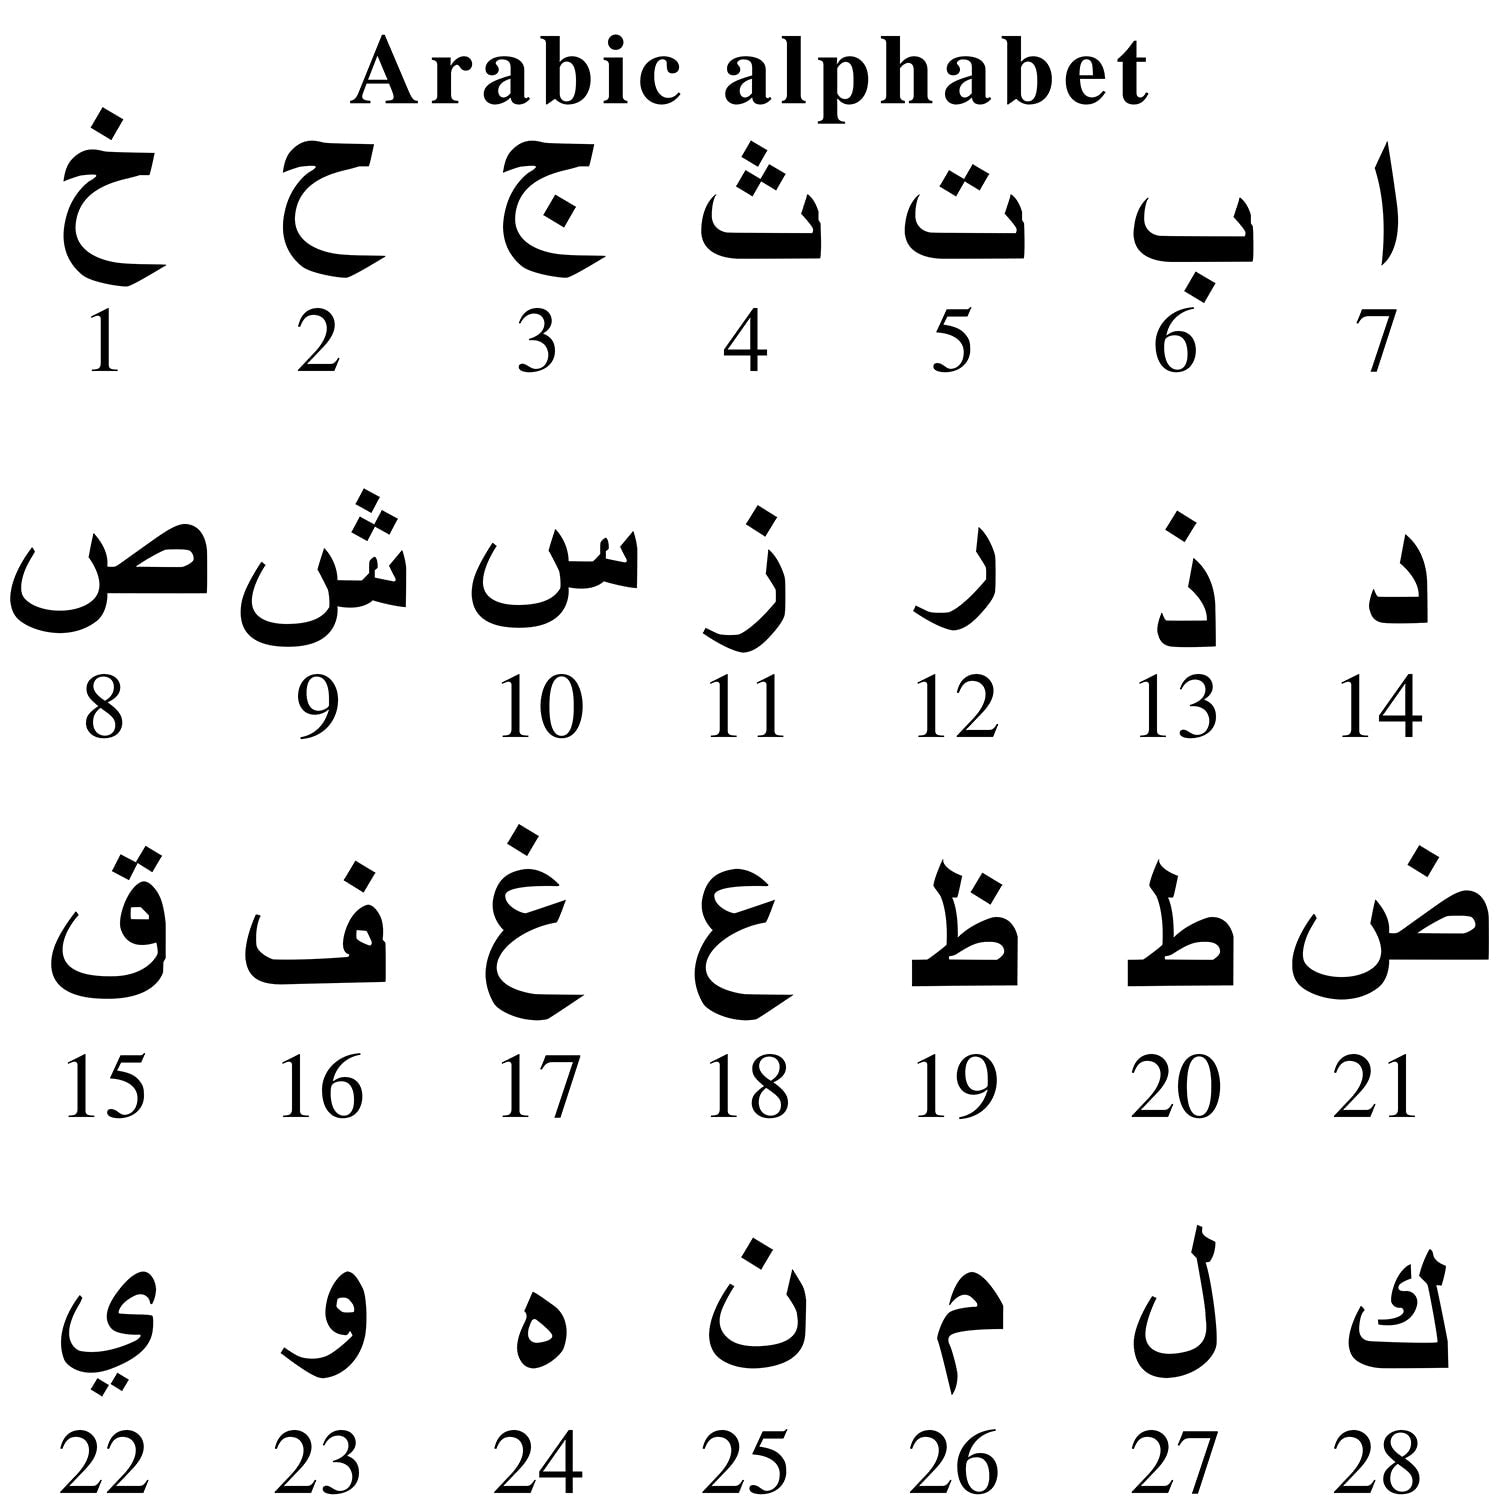 Arabic Letter Earrings - Limitless Jewellery